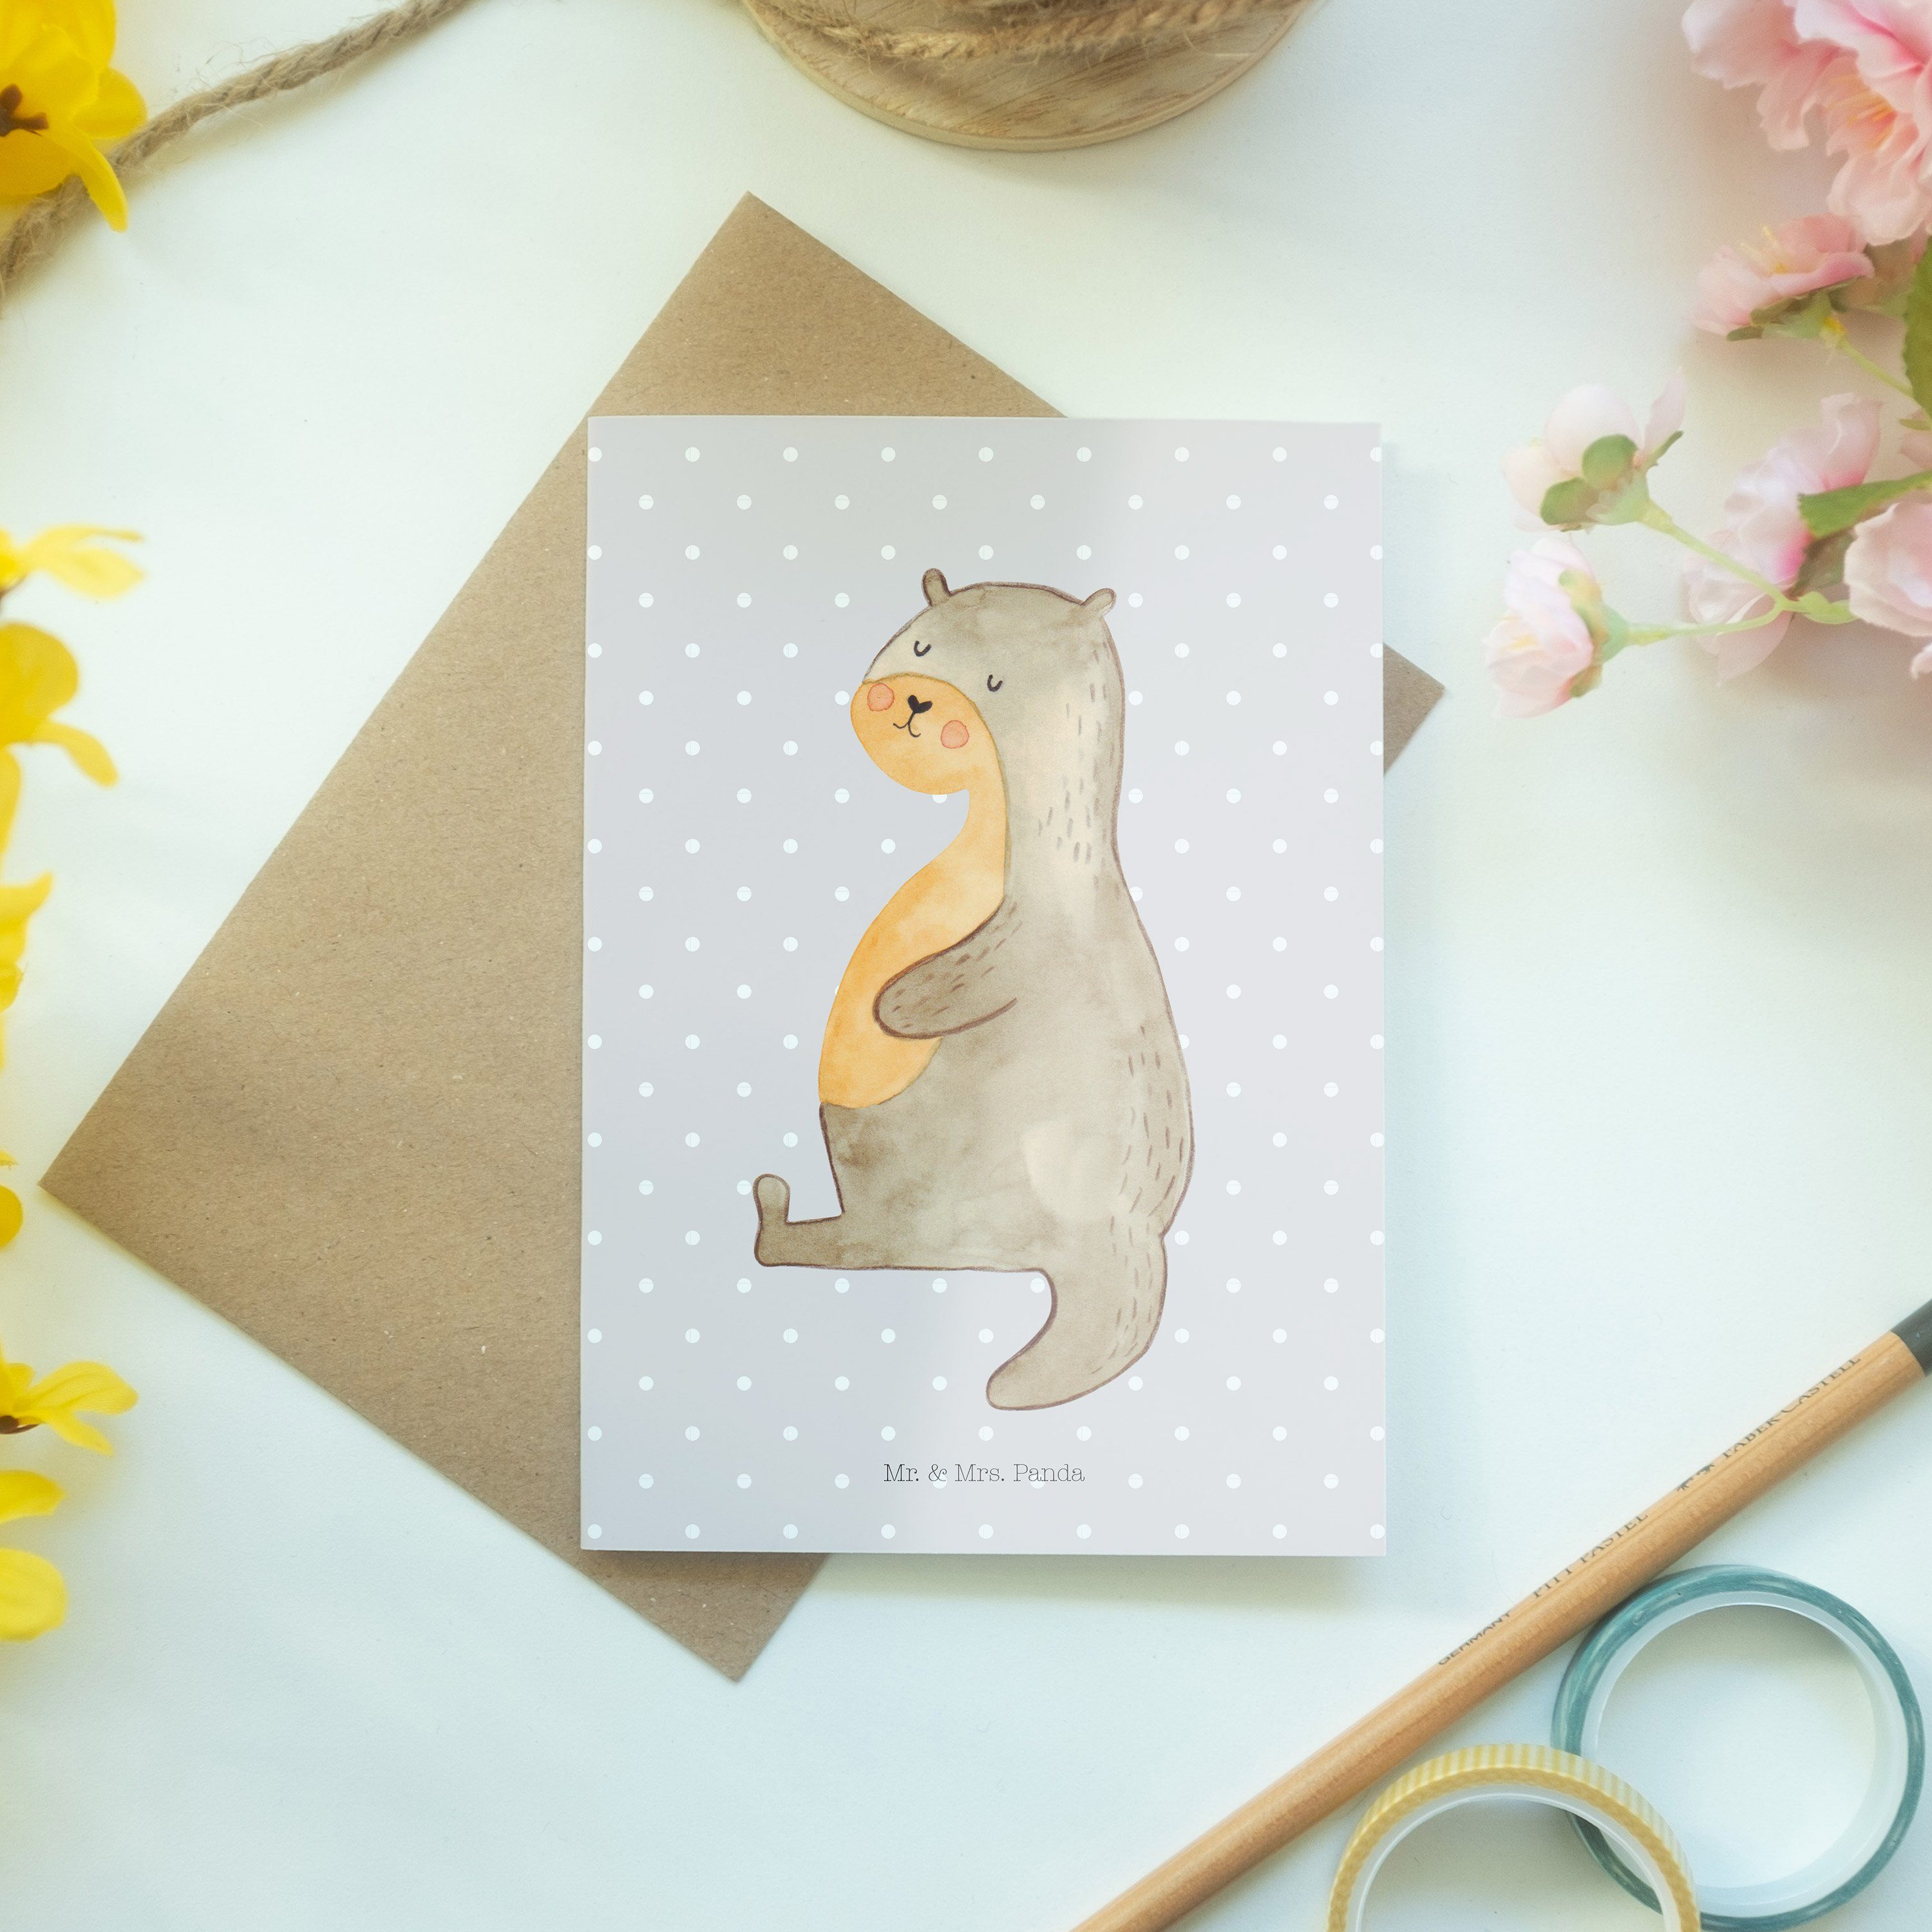 Mr. Bauch Panda Grau Pastell & Hochzeitskarte, - Sp Otter Geschenk, Grußkarte Mrs. - Fischotter,